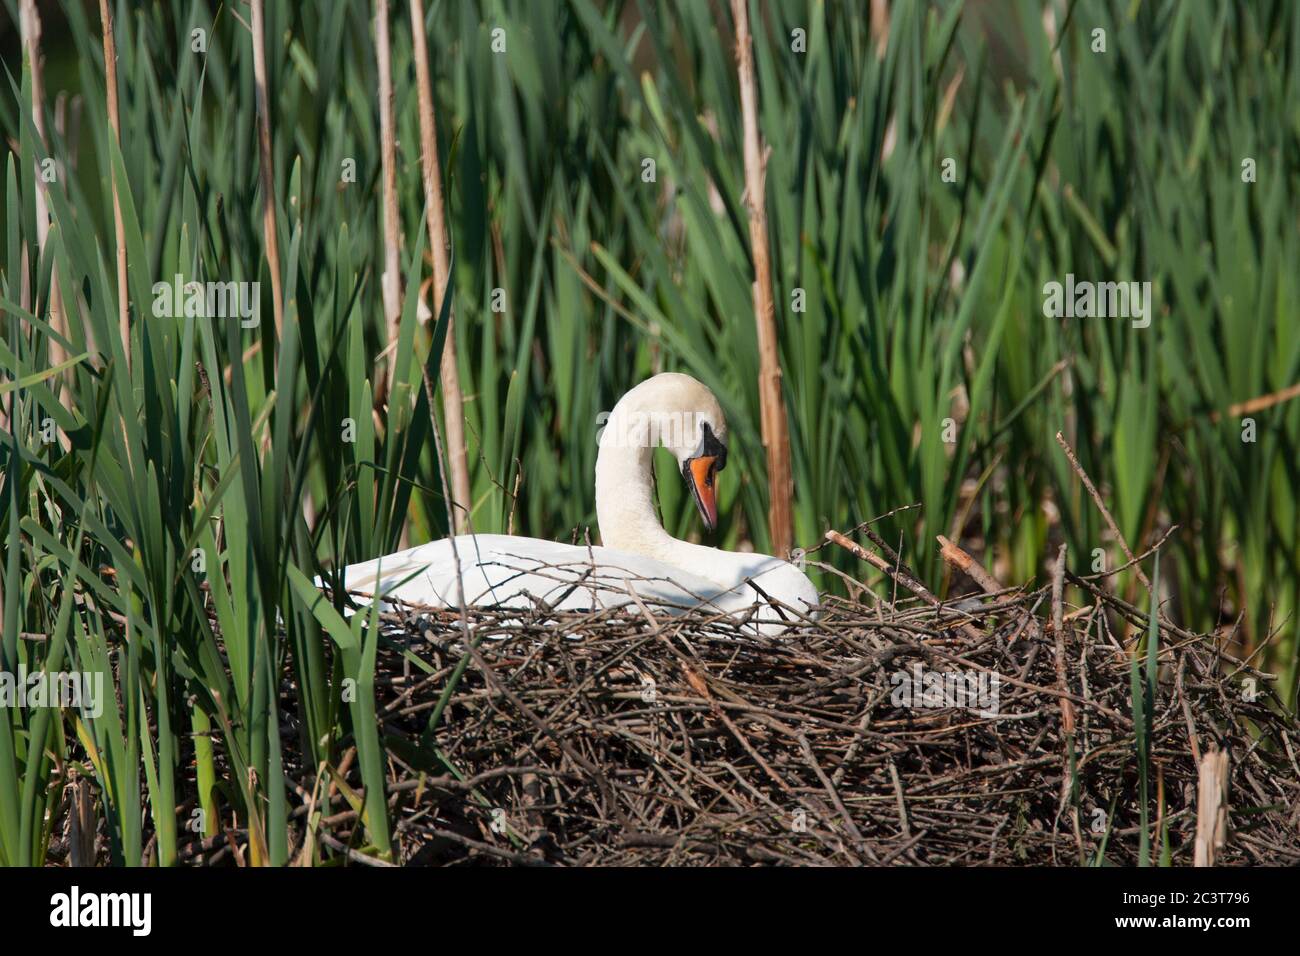 Stummer Schwan, Cygnus olor, alleinstehend auf Nest sitzend. Aufgenommen Im Mai. Lea Valley, Essex, Großbritannien. Stockfoto